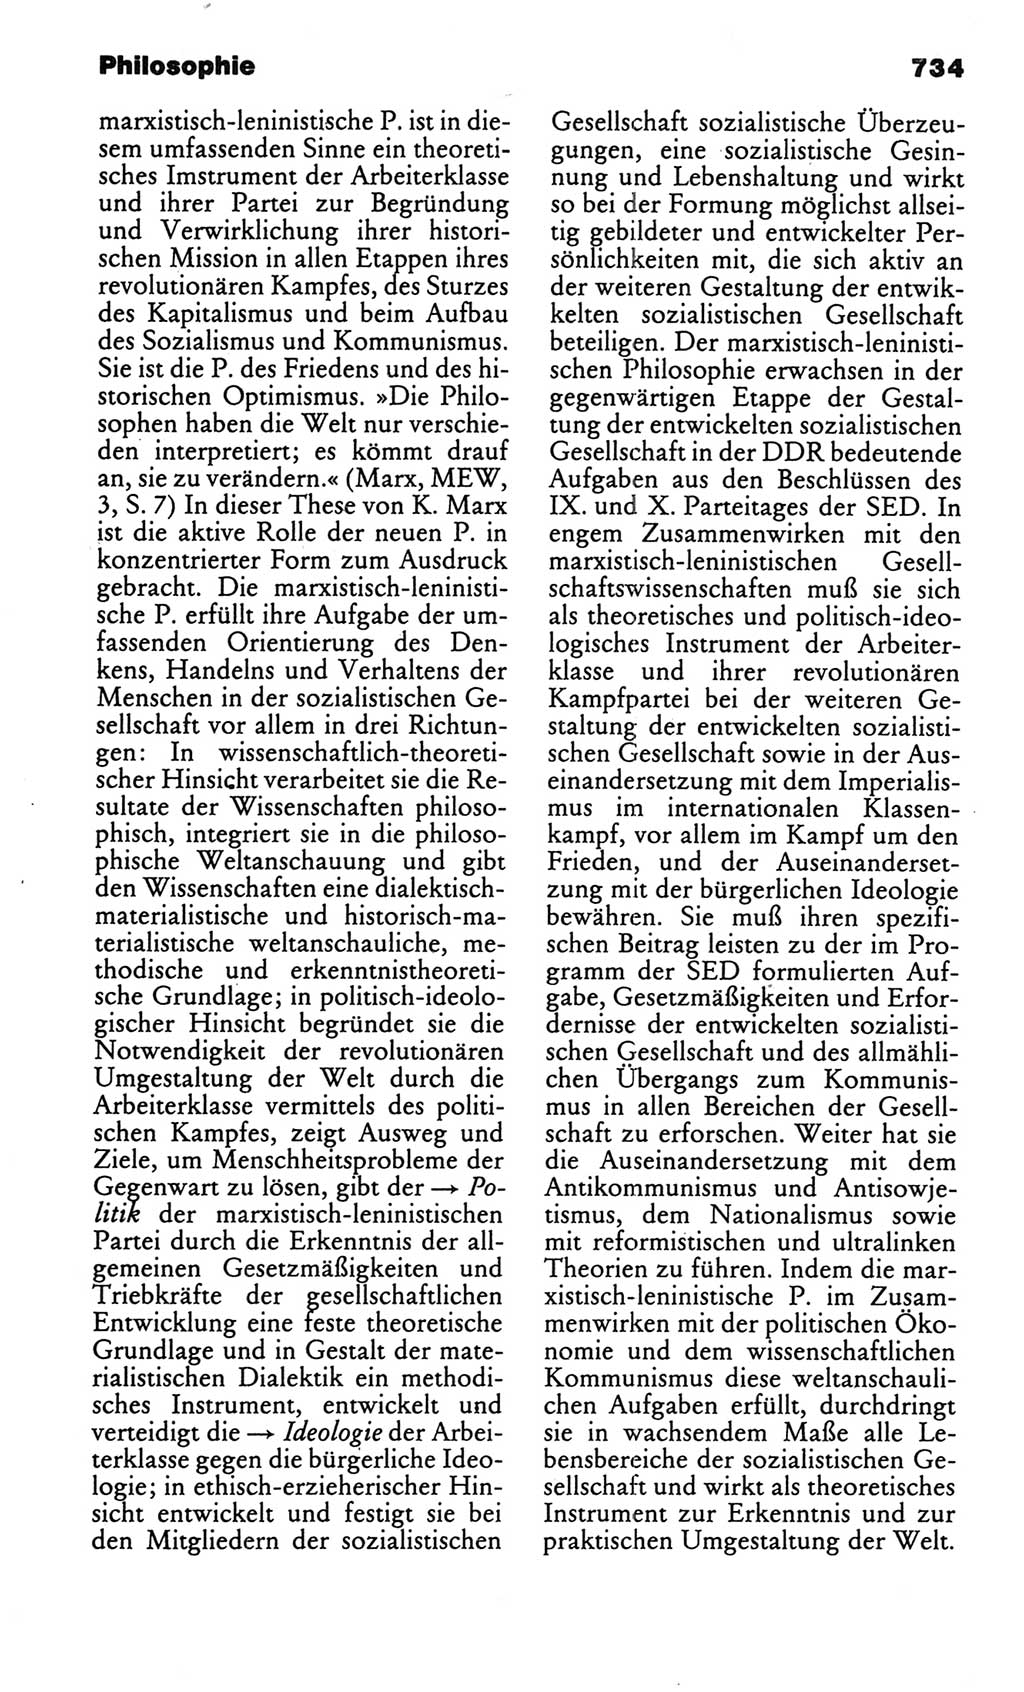 Kleines politisches Wörterbuch [Deutsche Demokratische Republik (DDR)] 1986, Seite 734 (Kl. pol. Wb. DDR 1986, S. 734)